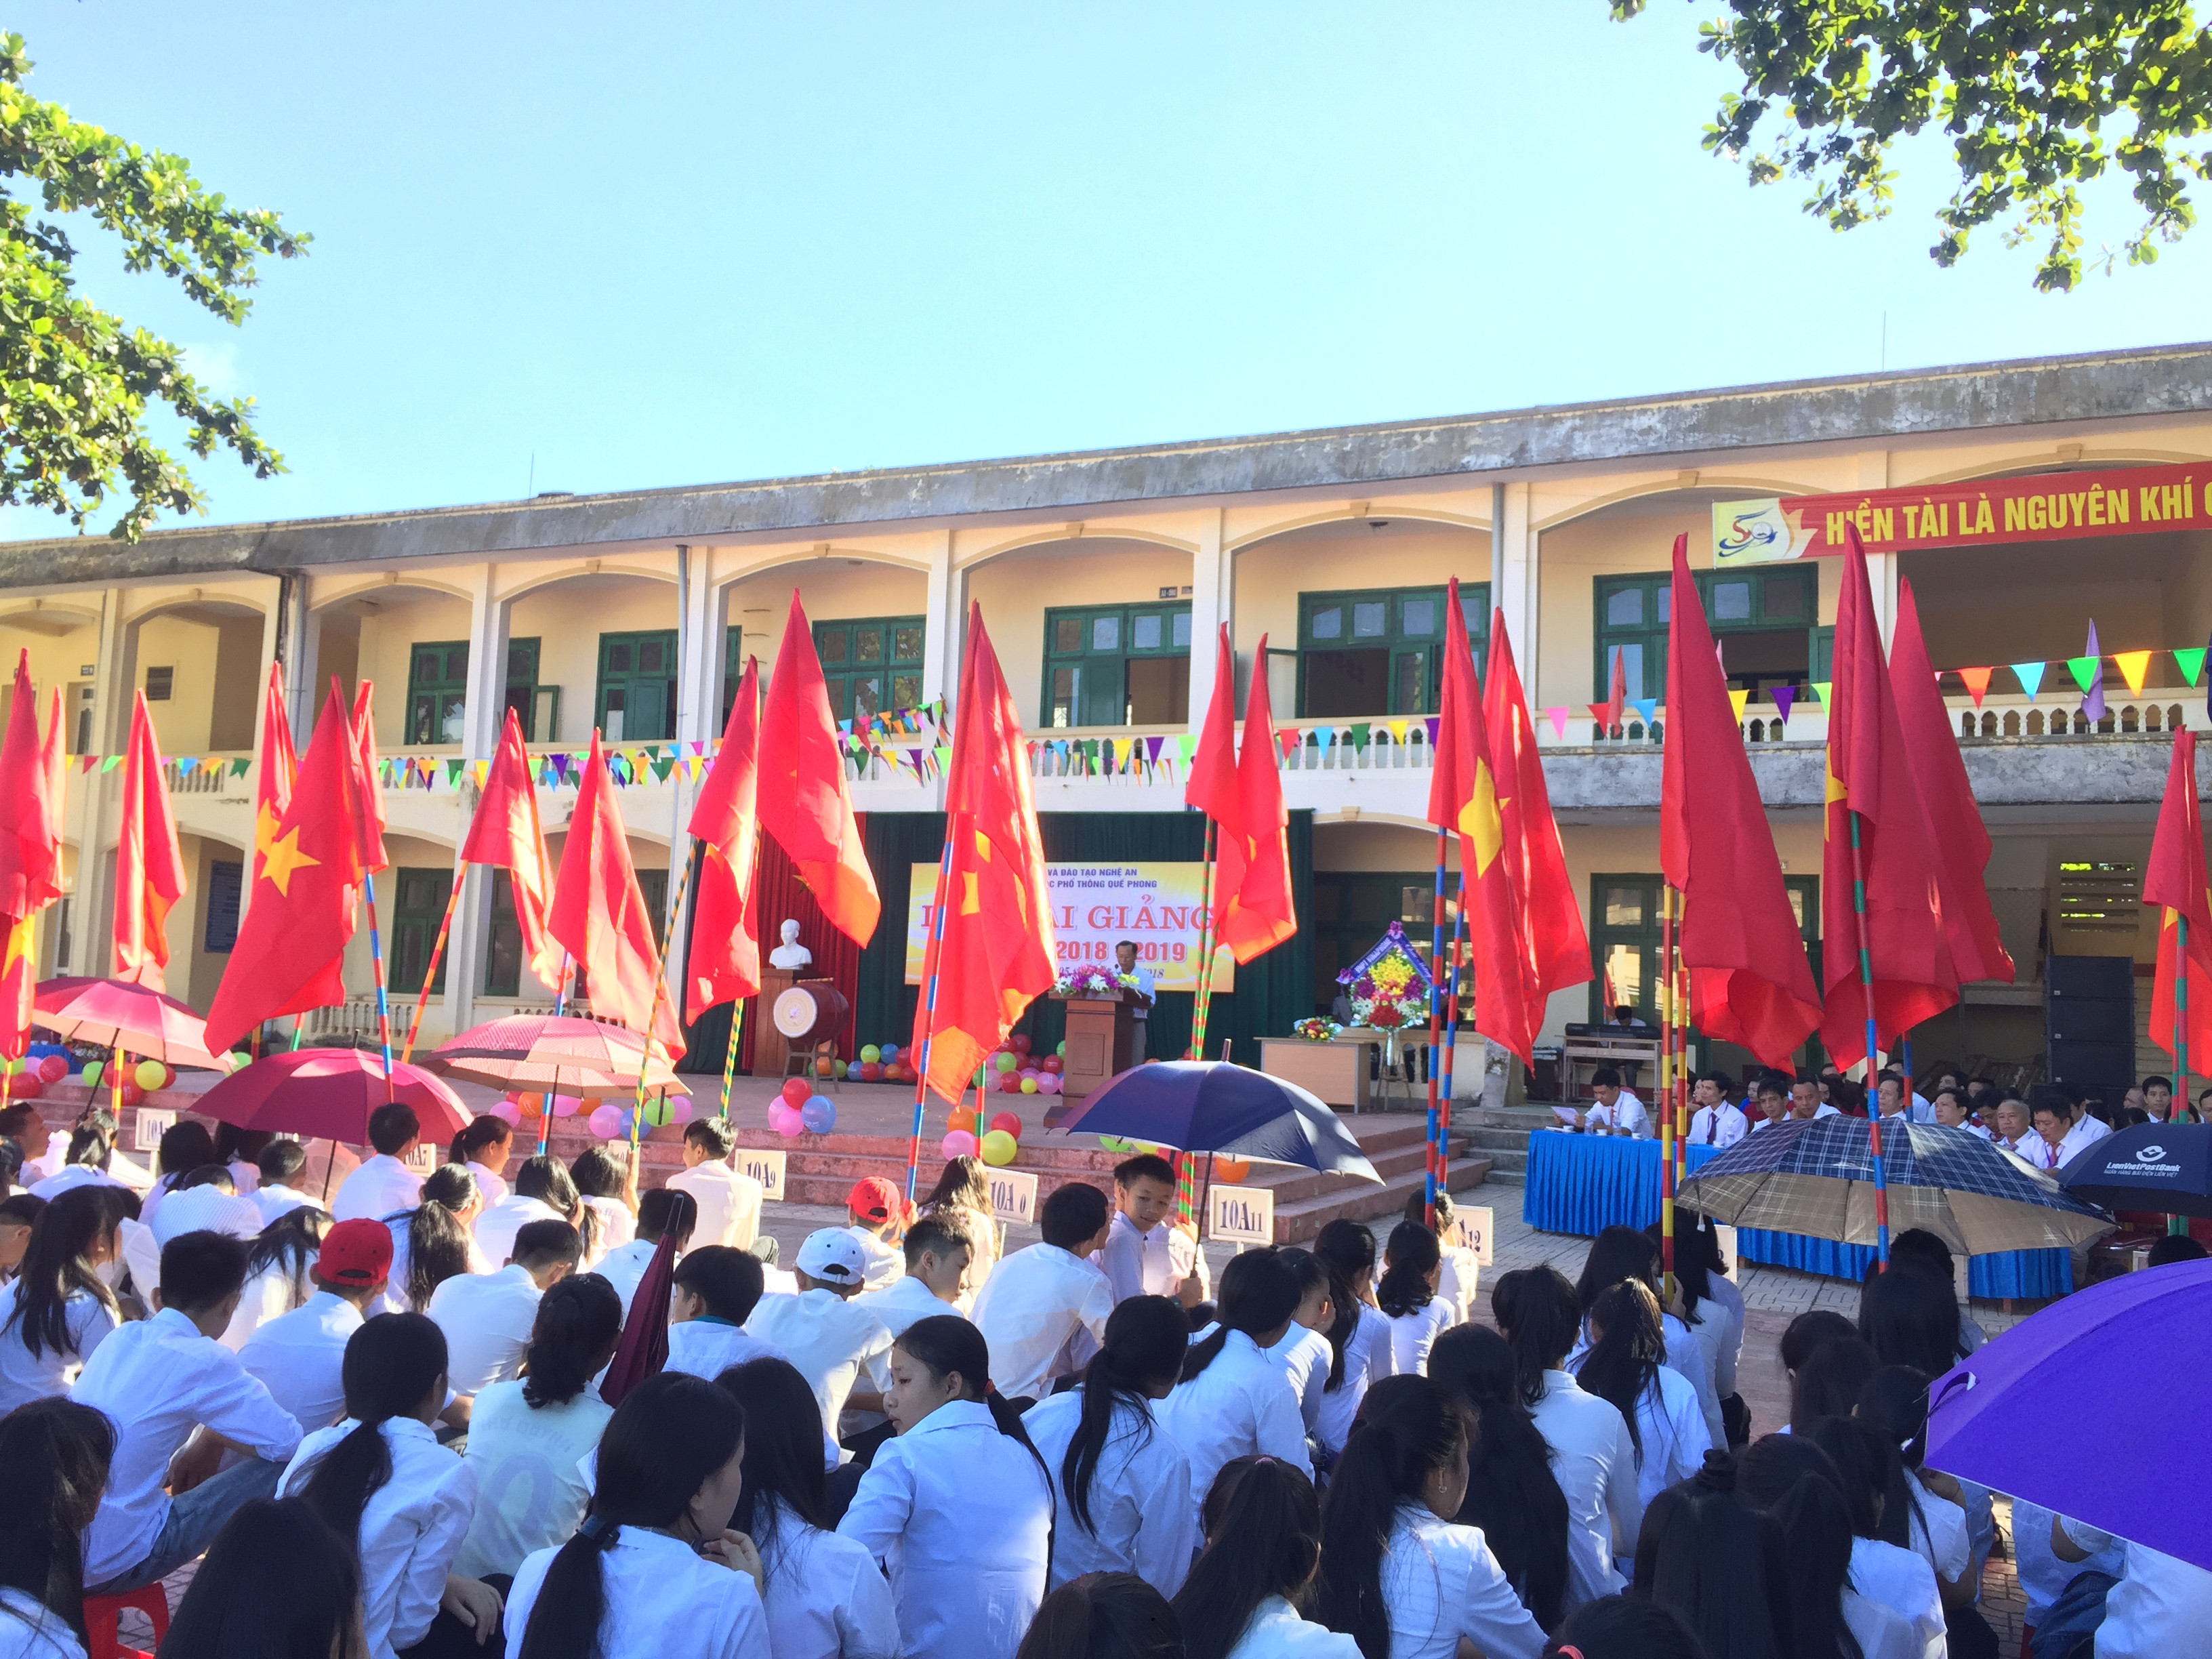 Toàn cảnh buổi lễ khai giảng ở Quế Phong. Ảnh: Hoàng Tím